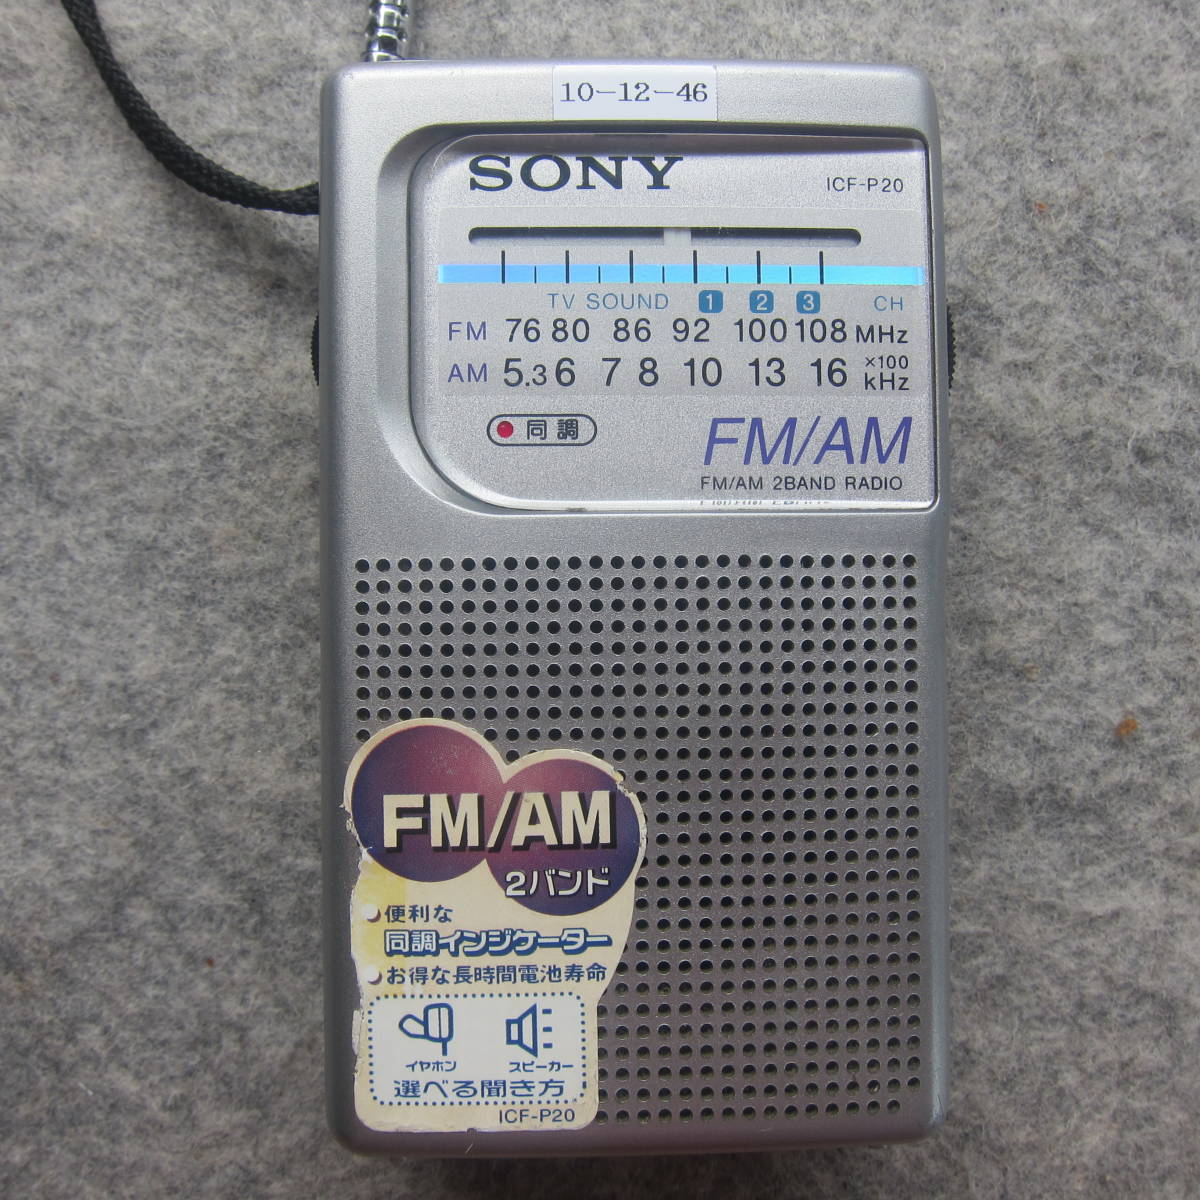 SONY ソニー AMポータブルラジオ ICR-P20 受信動作確認品 10-12-46_ＦＭ受信出来ました